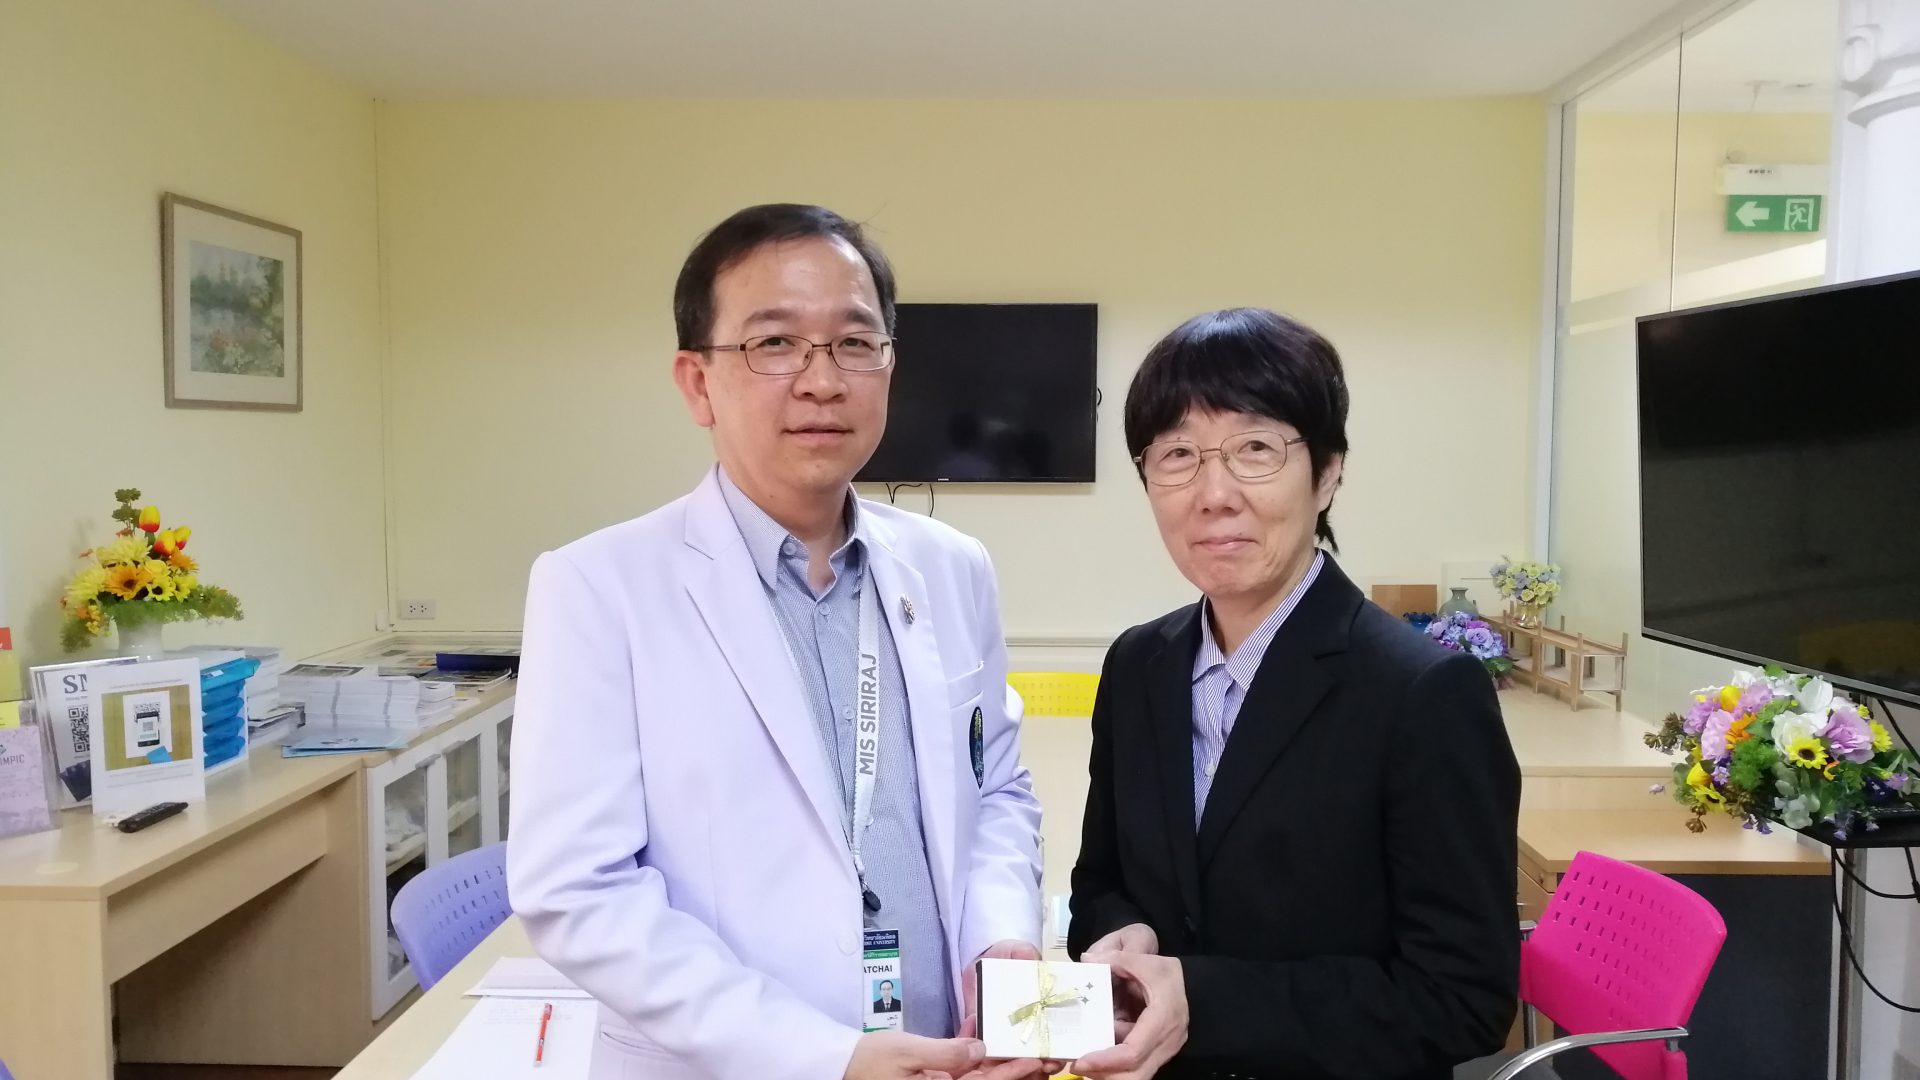 Deputy Vice-President of Chiba University Visits Siriraj